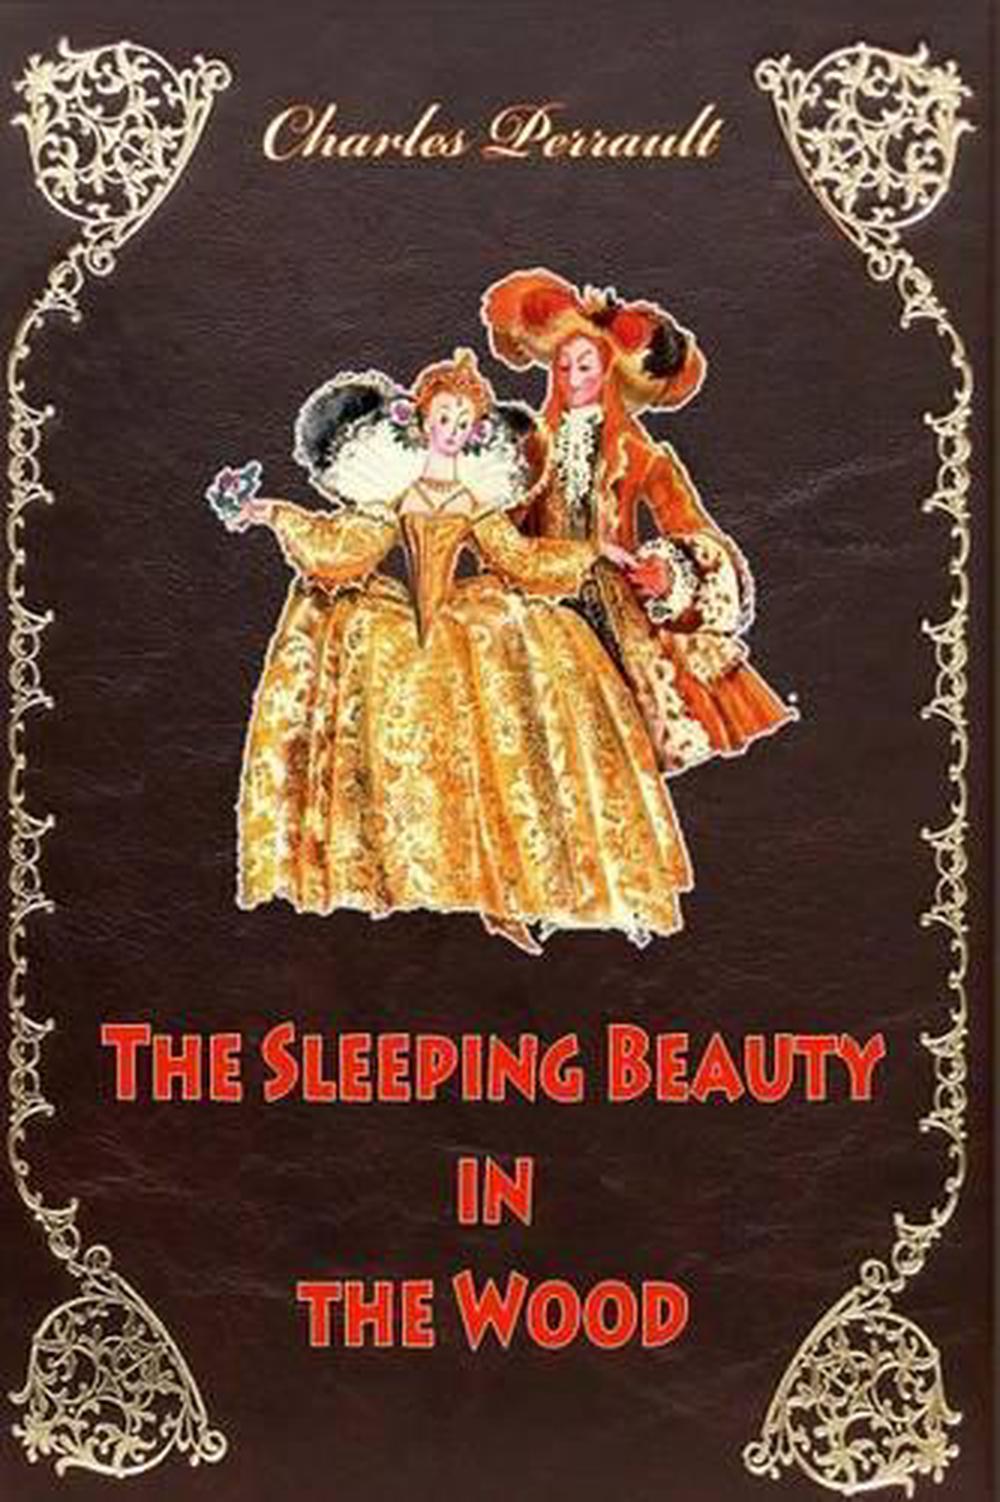 The original sleeping beauty story charles perrault